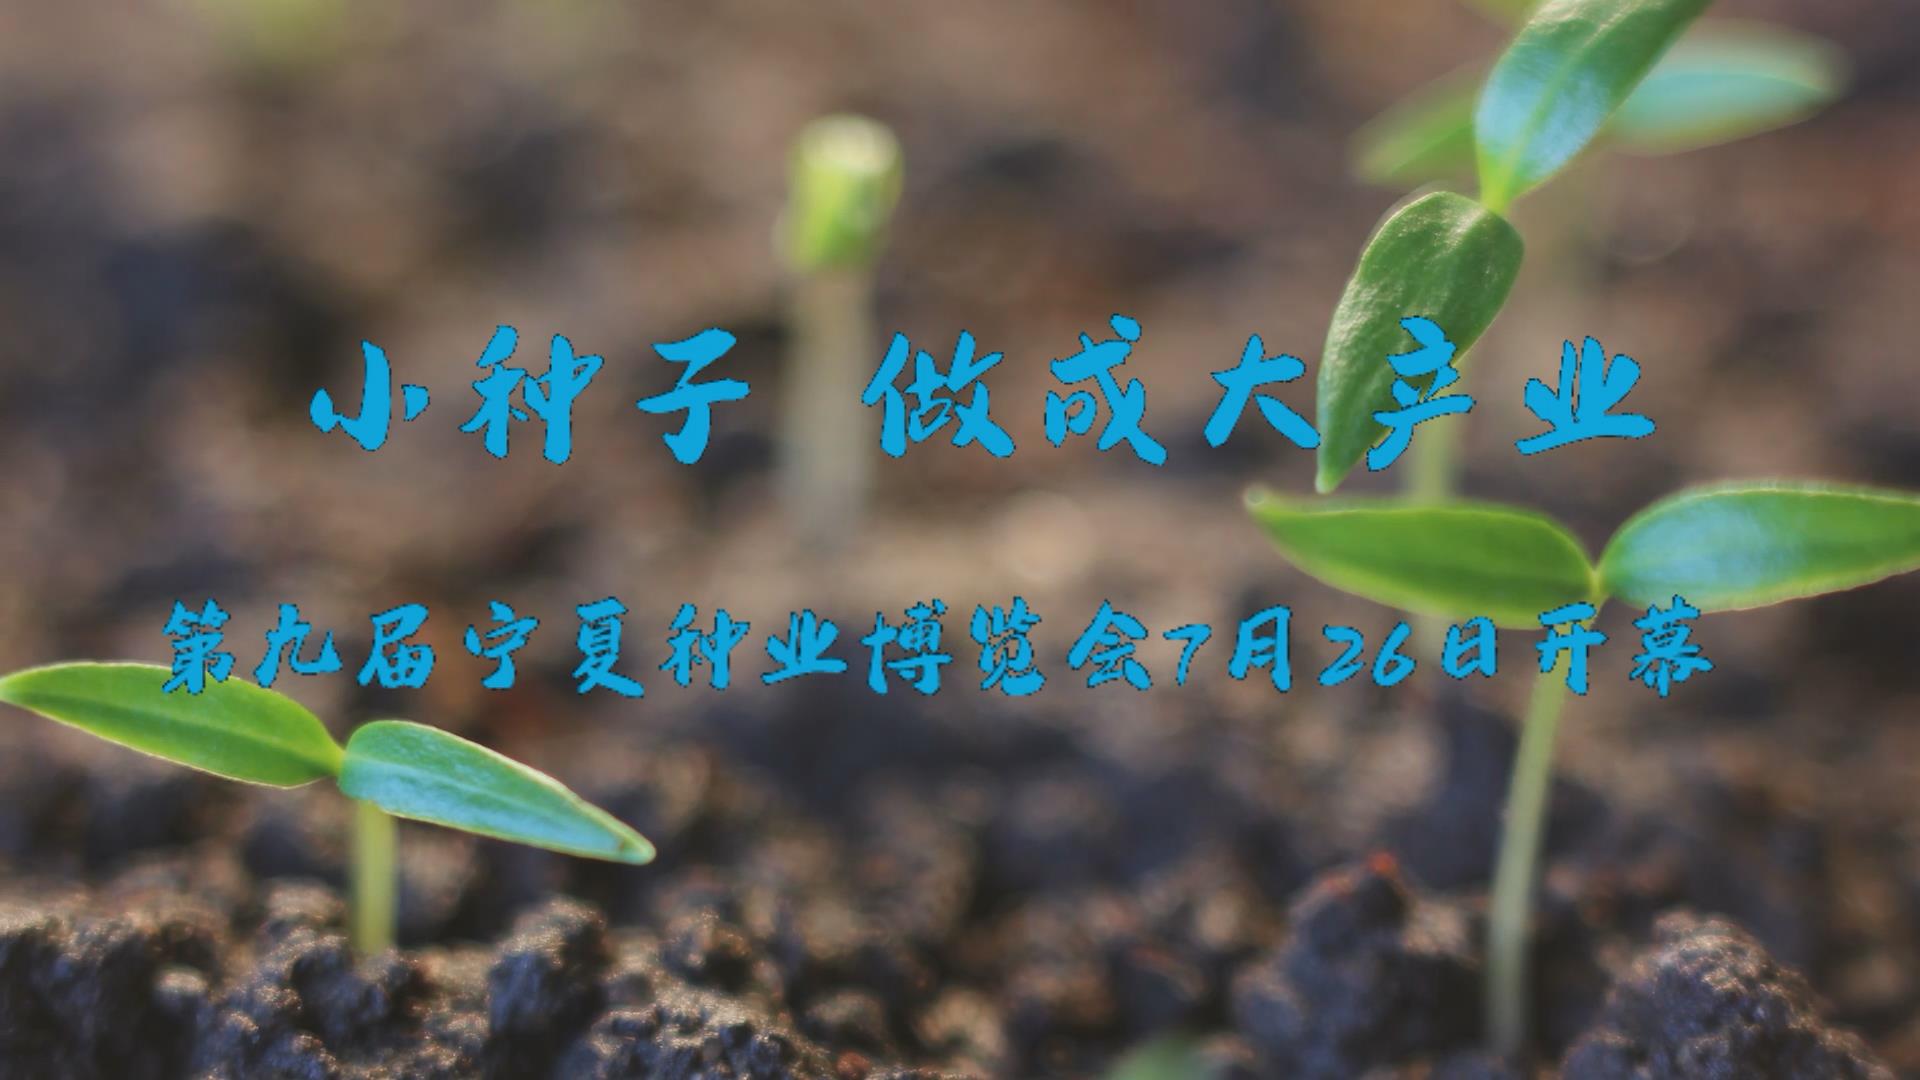 小種子做成大産業 第九屆寧夏種業博覽會7月26日開幕